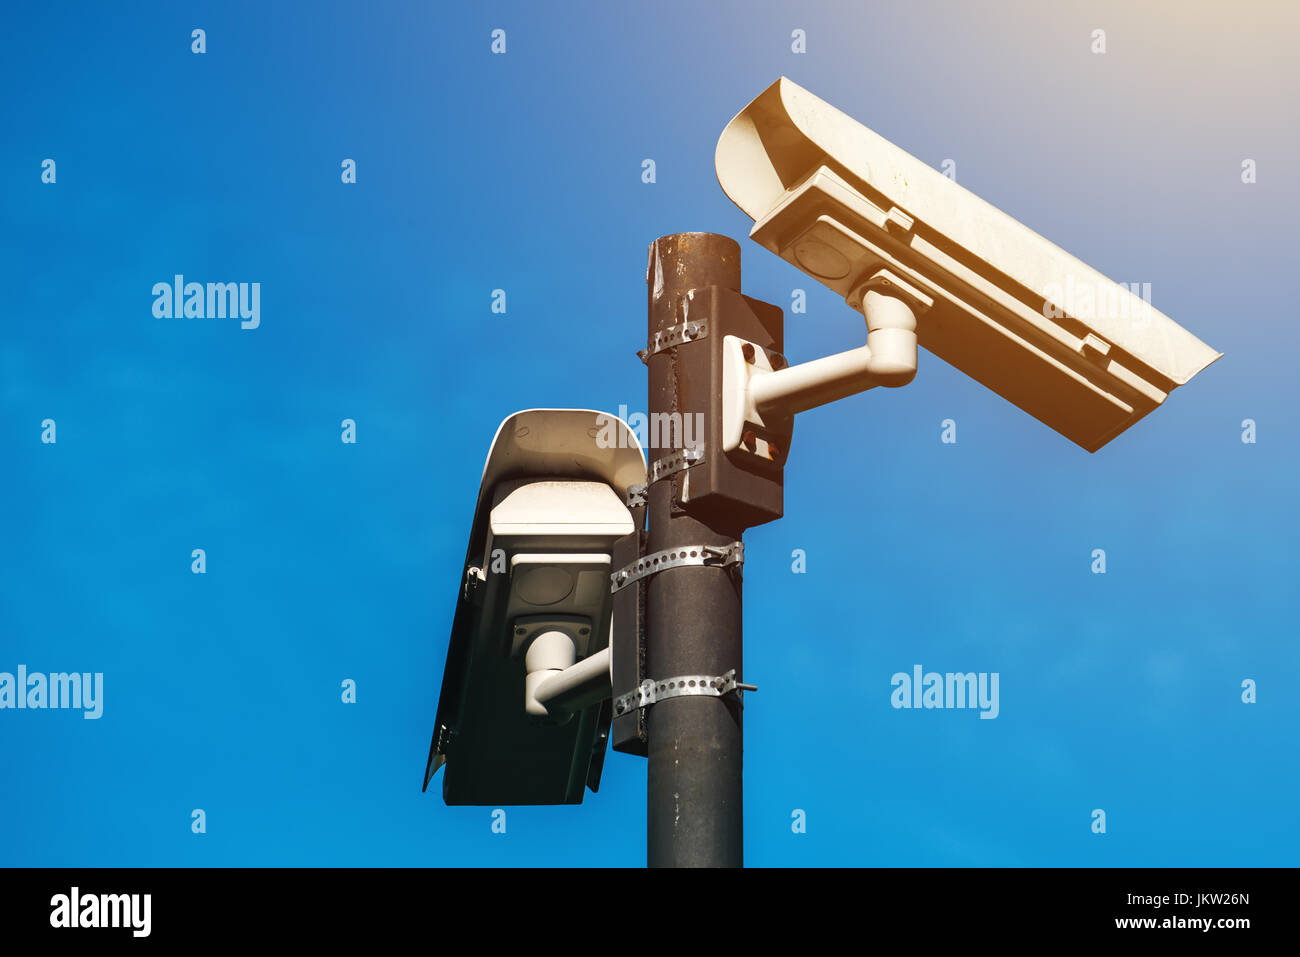 Telecamera TVCC, epoca moderna anti-terrorismo di sorveglianza elettronica telecamere di sicurezza contro il cielo blu che simboleggia la libertà Foto Stock